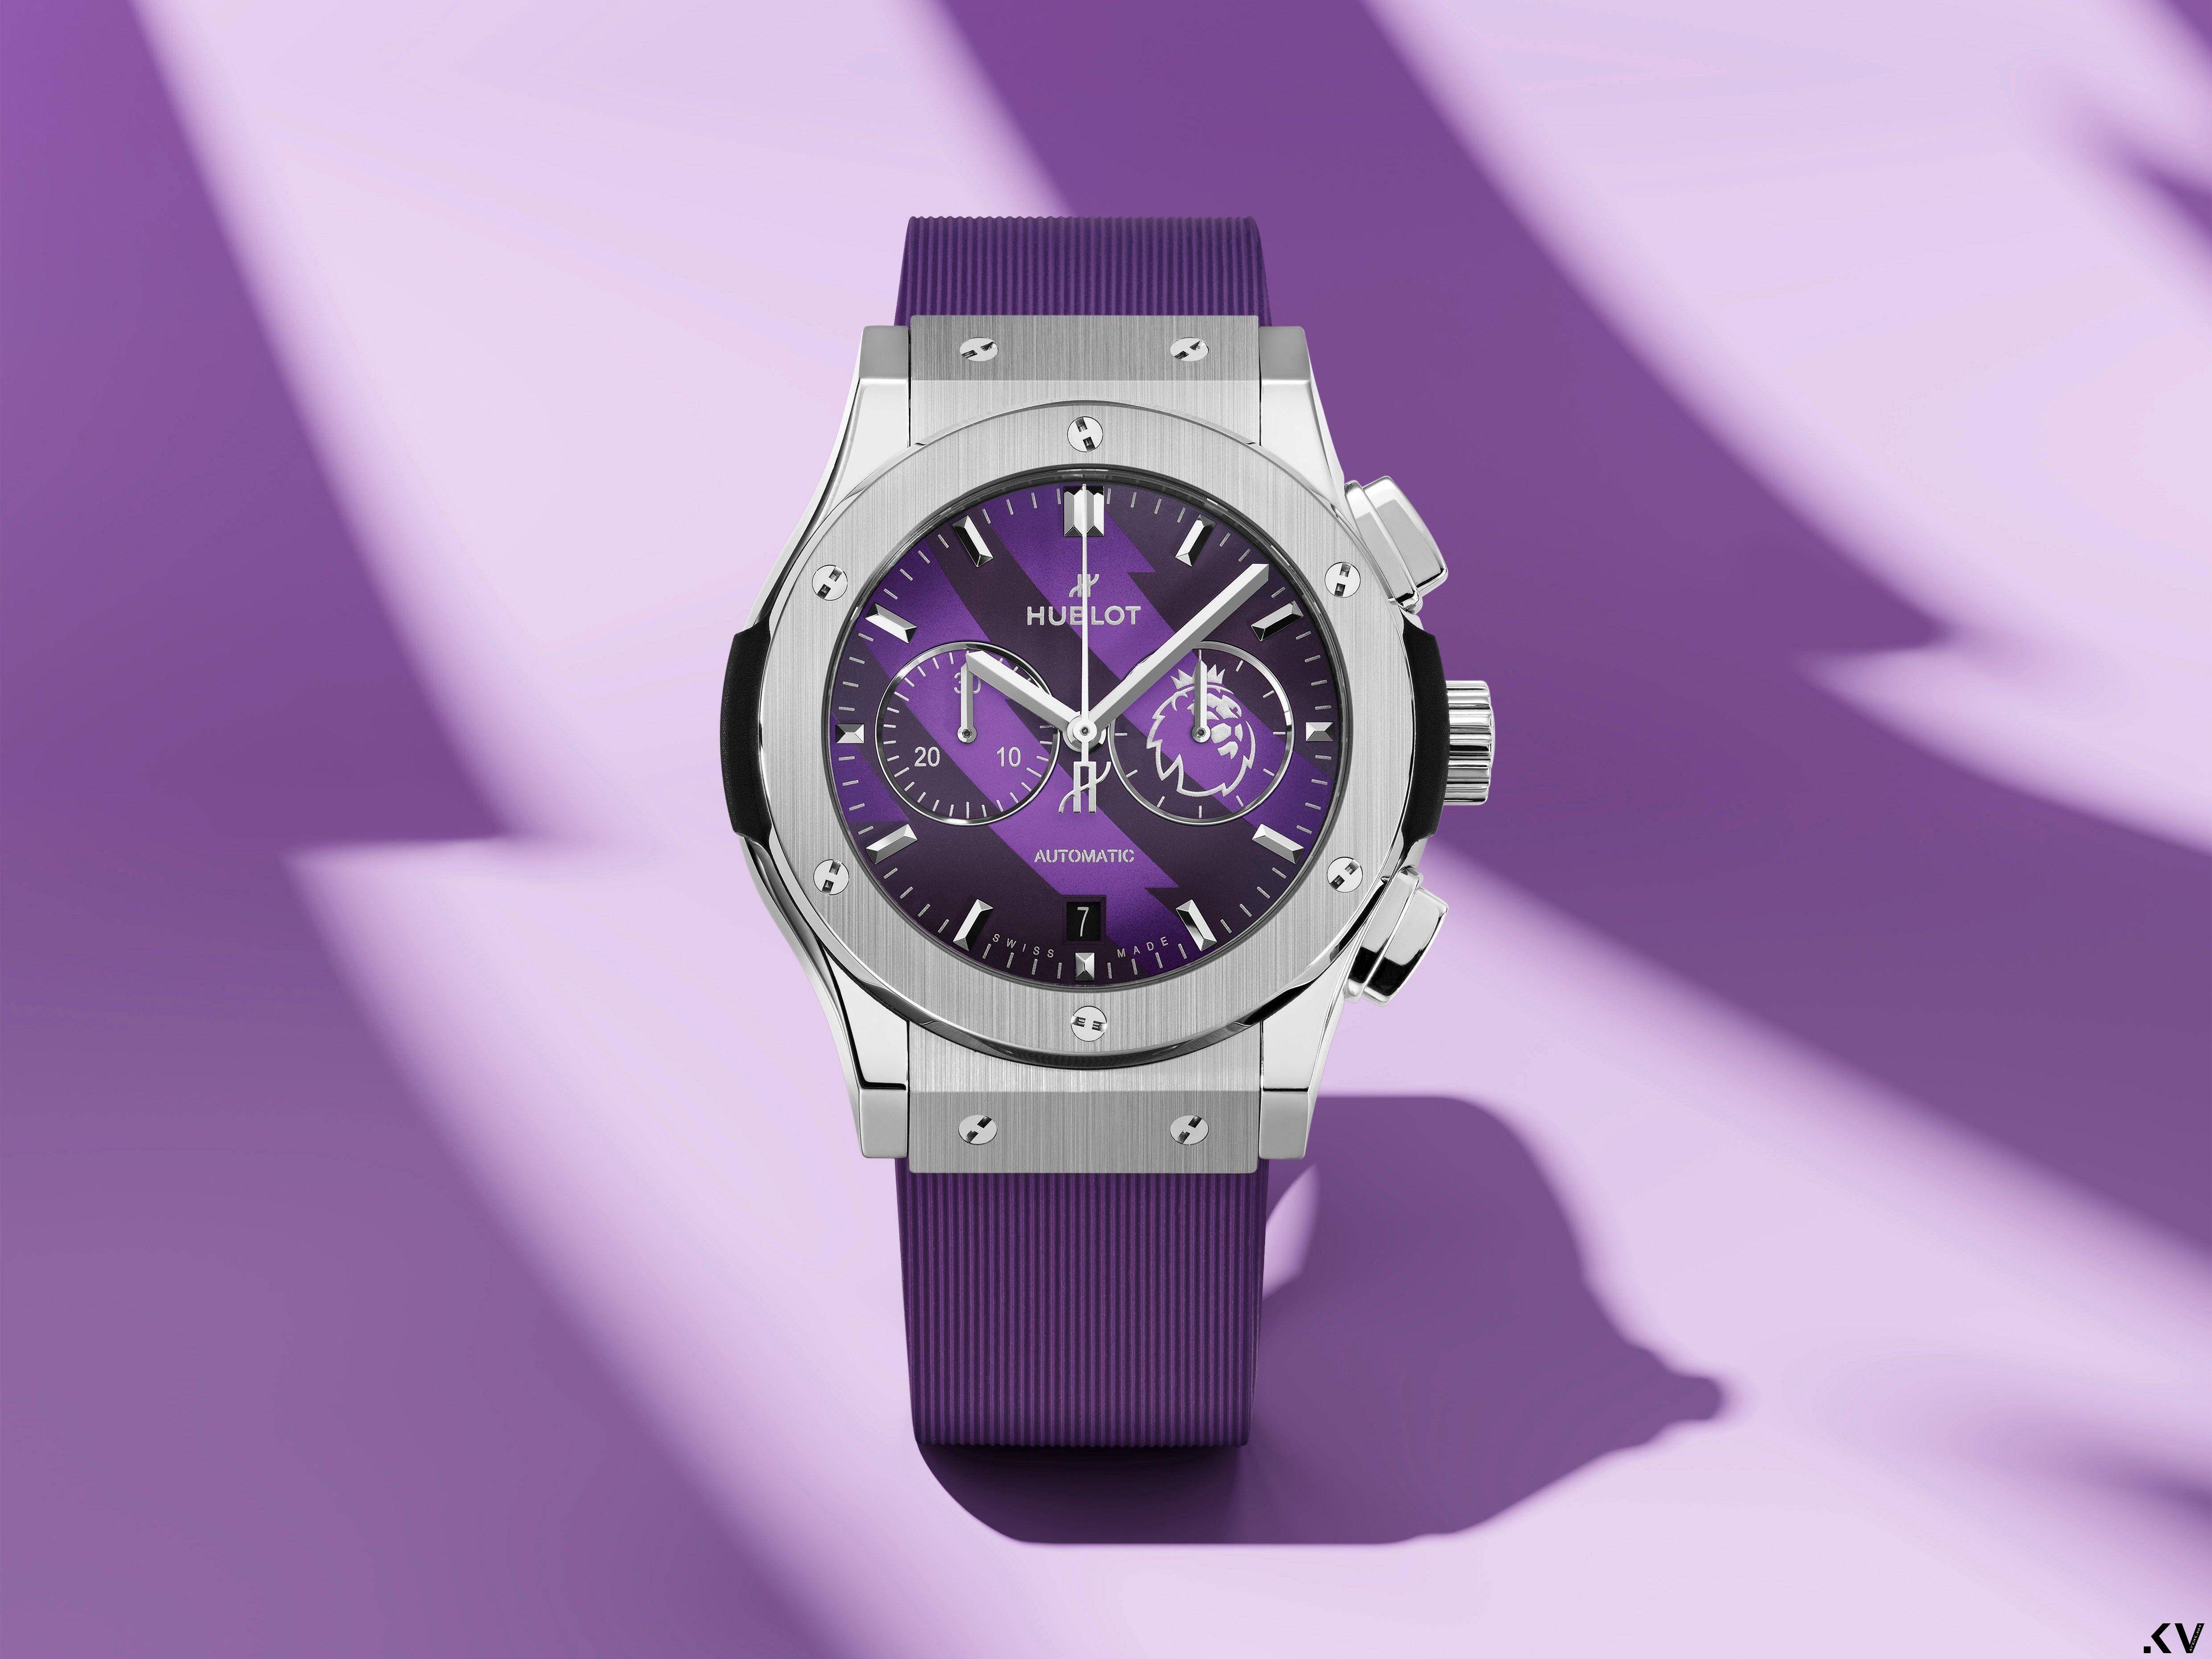 HUBLOT紫色雄狮表好霸气　英超足球迷一眼认出 奢侈品牌 图1张